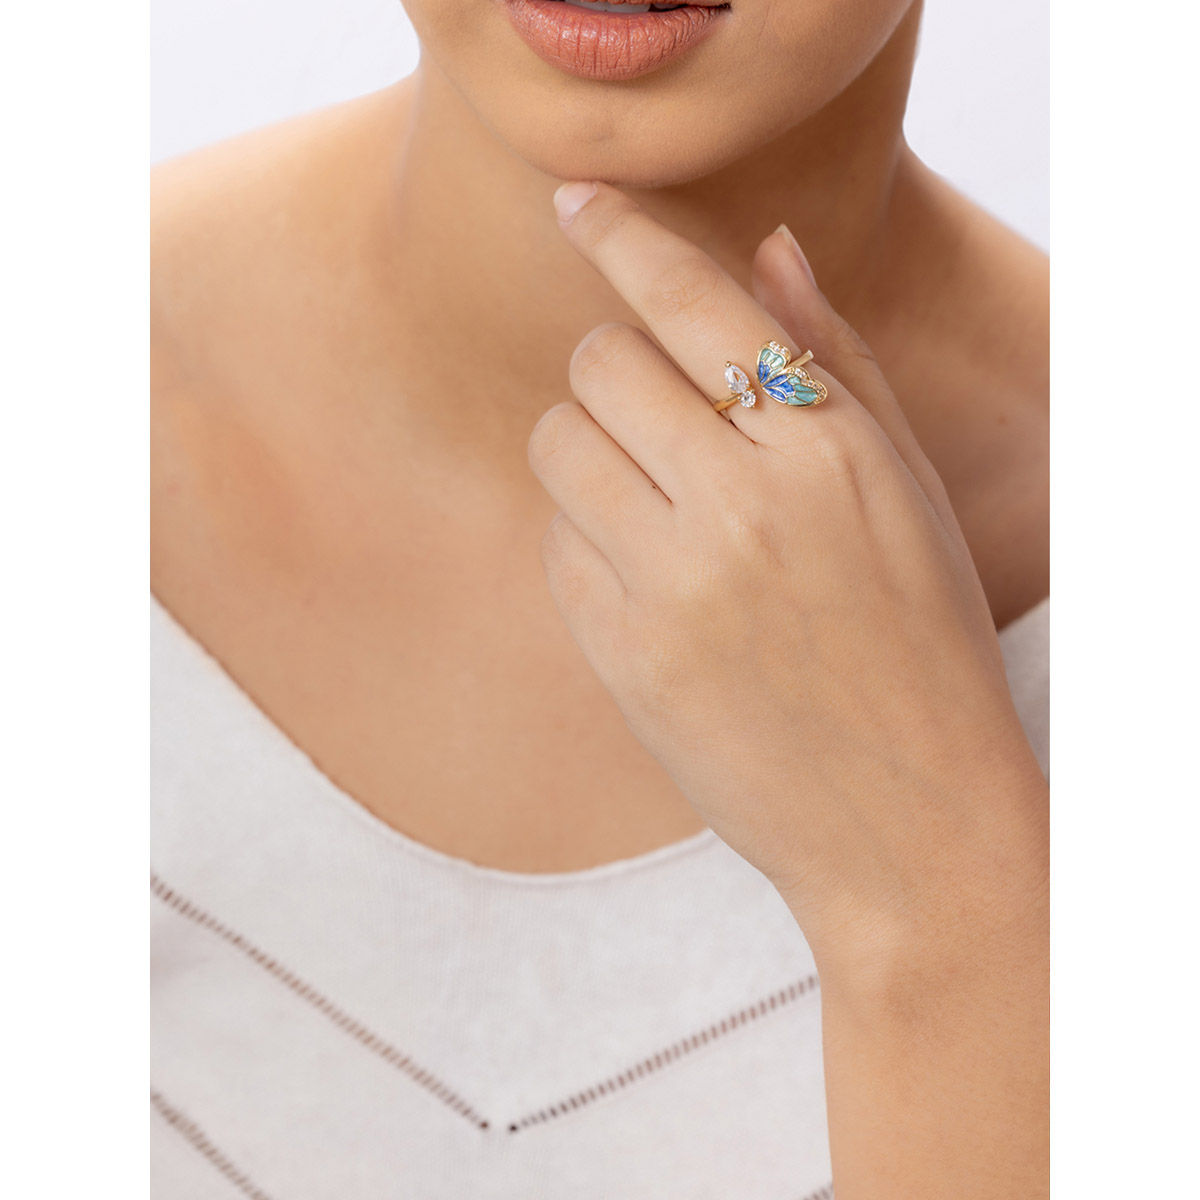 Vibrant Gold Ring with Diamonds and Navy Enamel | Katerina Marmagioli